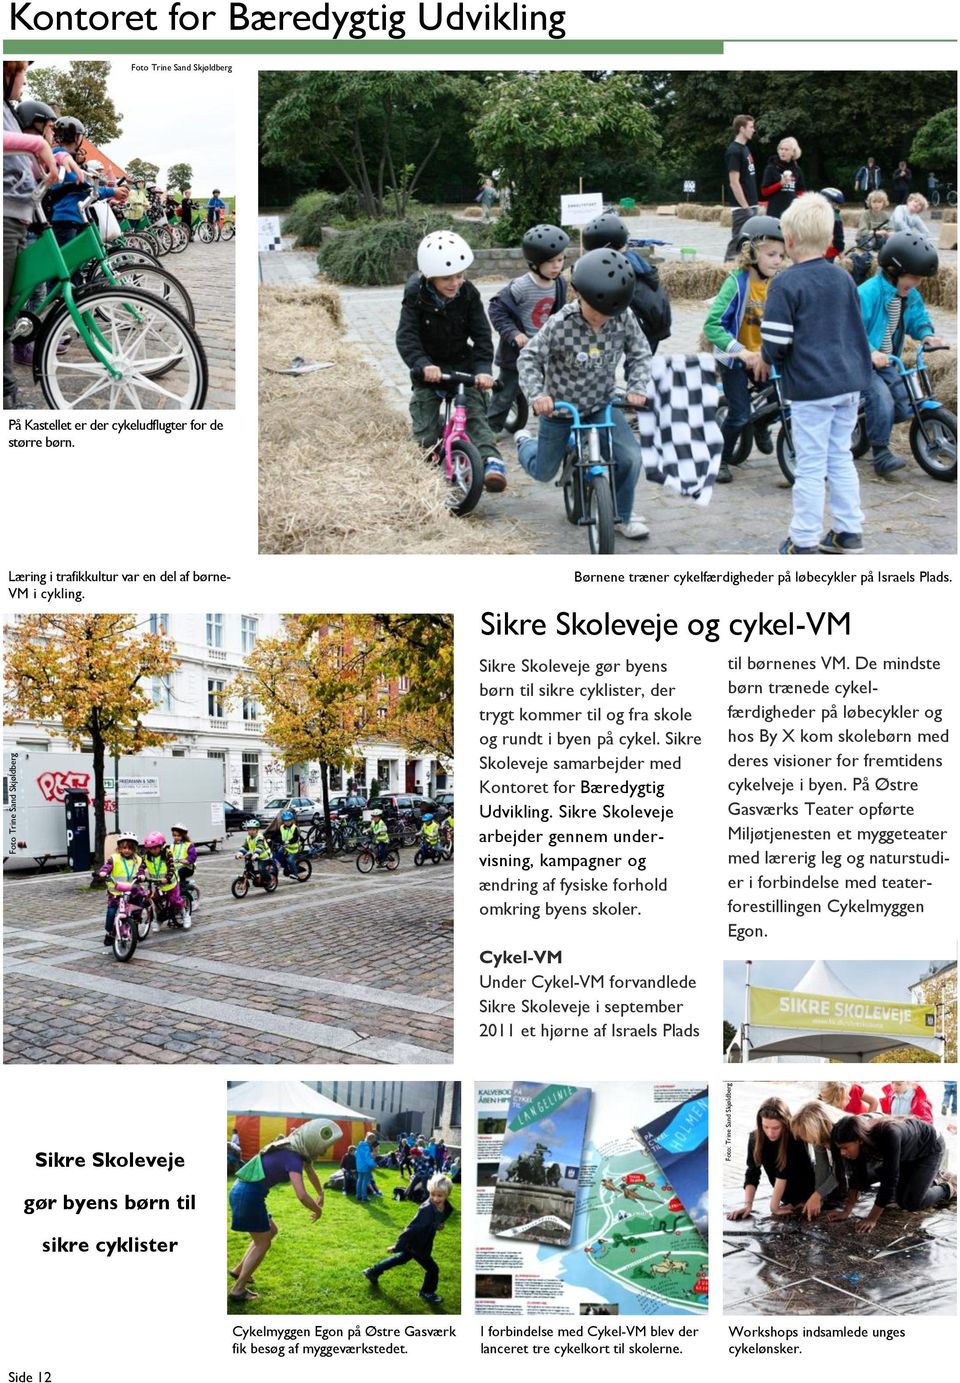 Sikre Skoleveje og cykel-vm Sikre Skoleveje gør byens børn til sikre cyklister, der trygt kommer til og fra skole og rundt i byen på cykel.